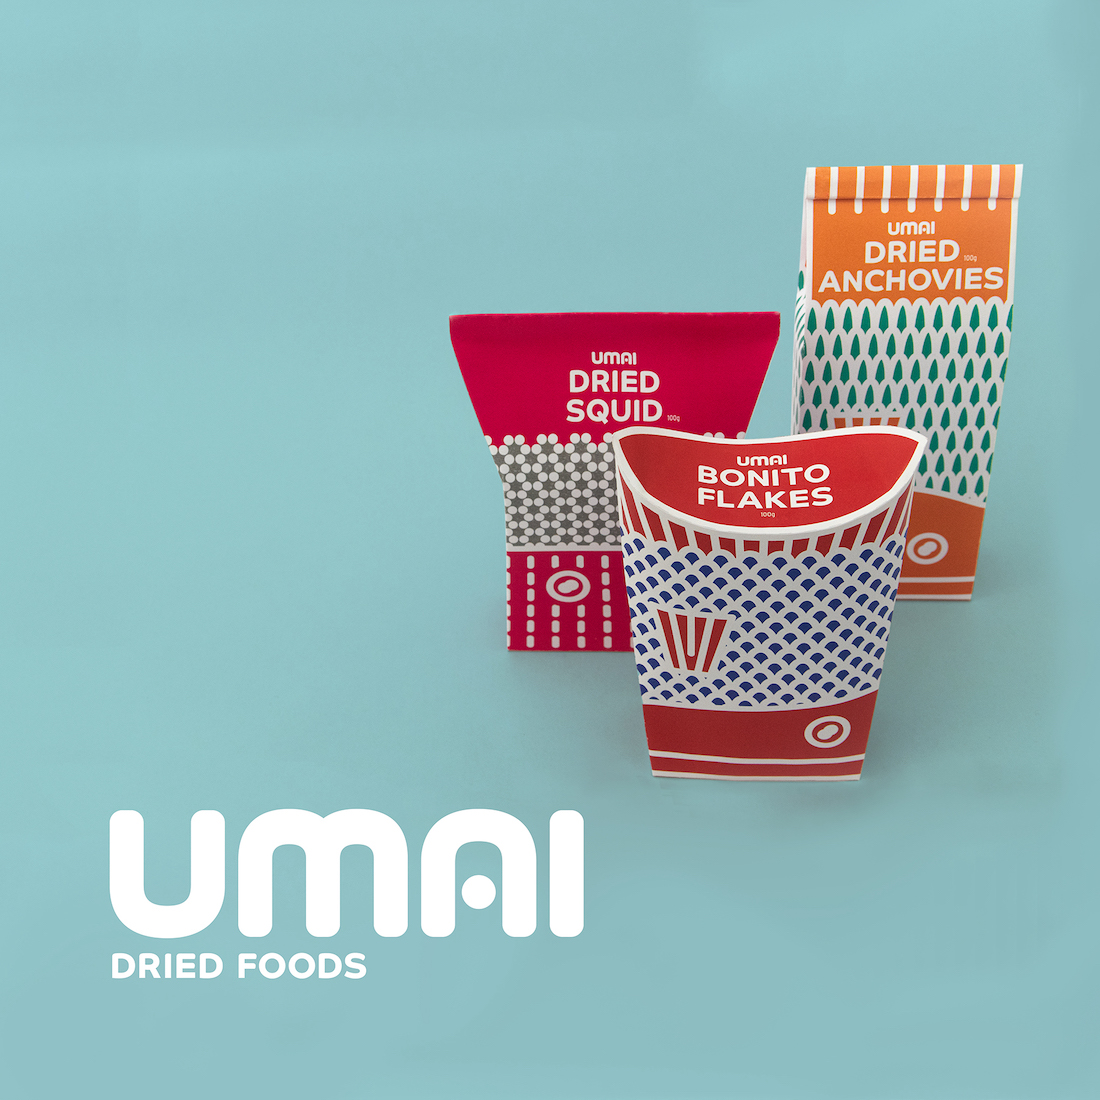 Umai Dried Foods